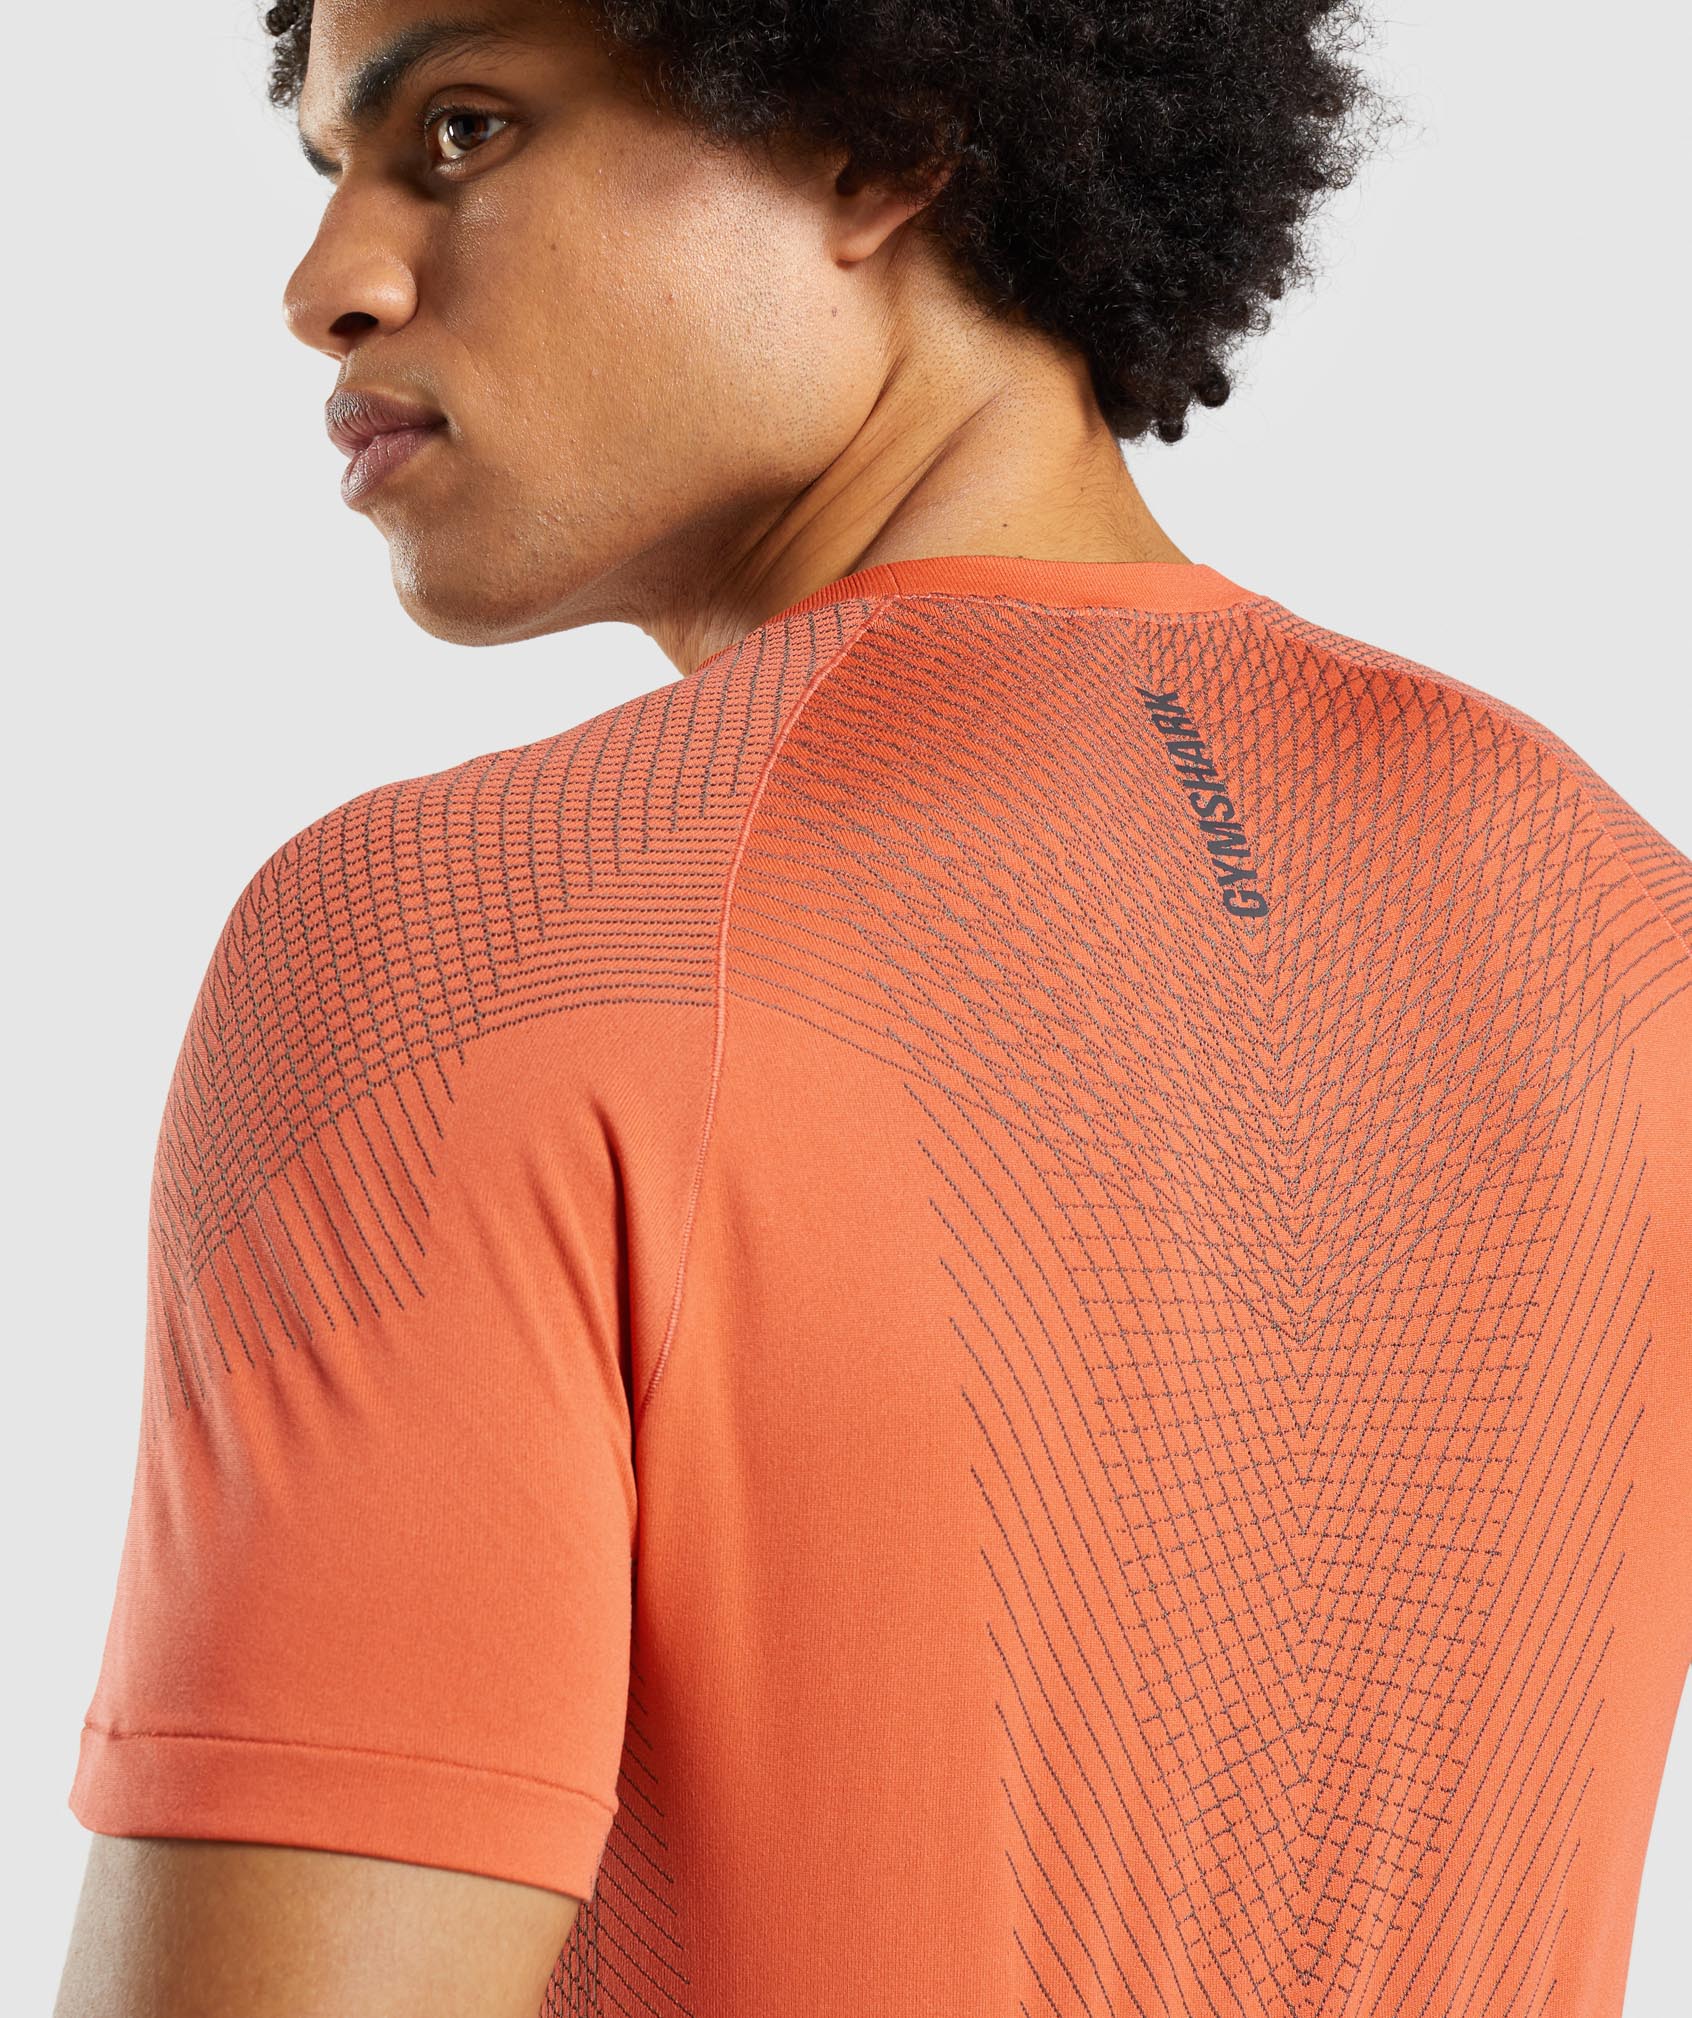 Apex Seamless T-Shirt in Papaya Orange/Onyx Grey